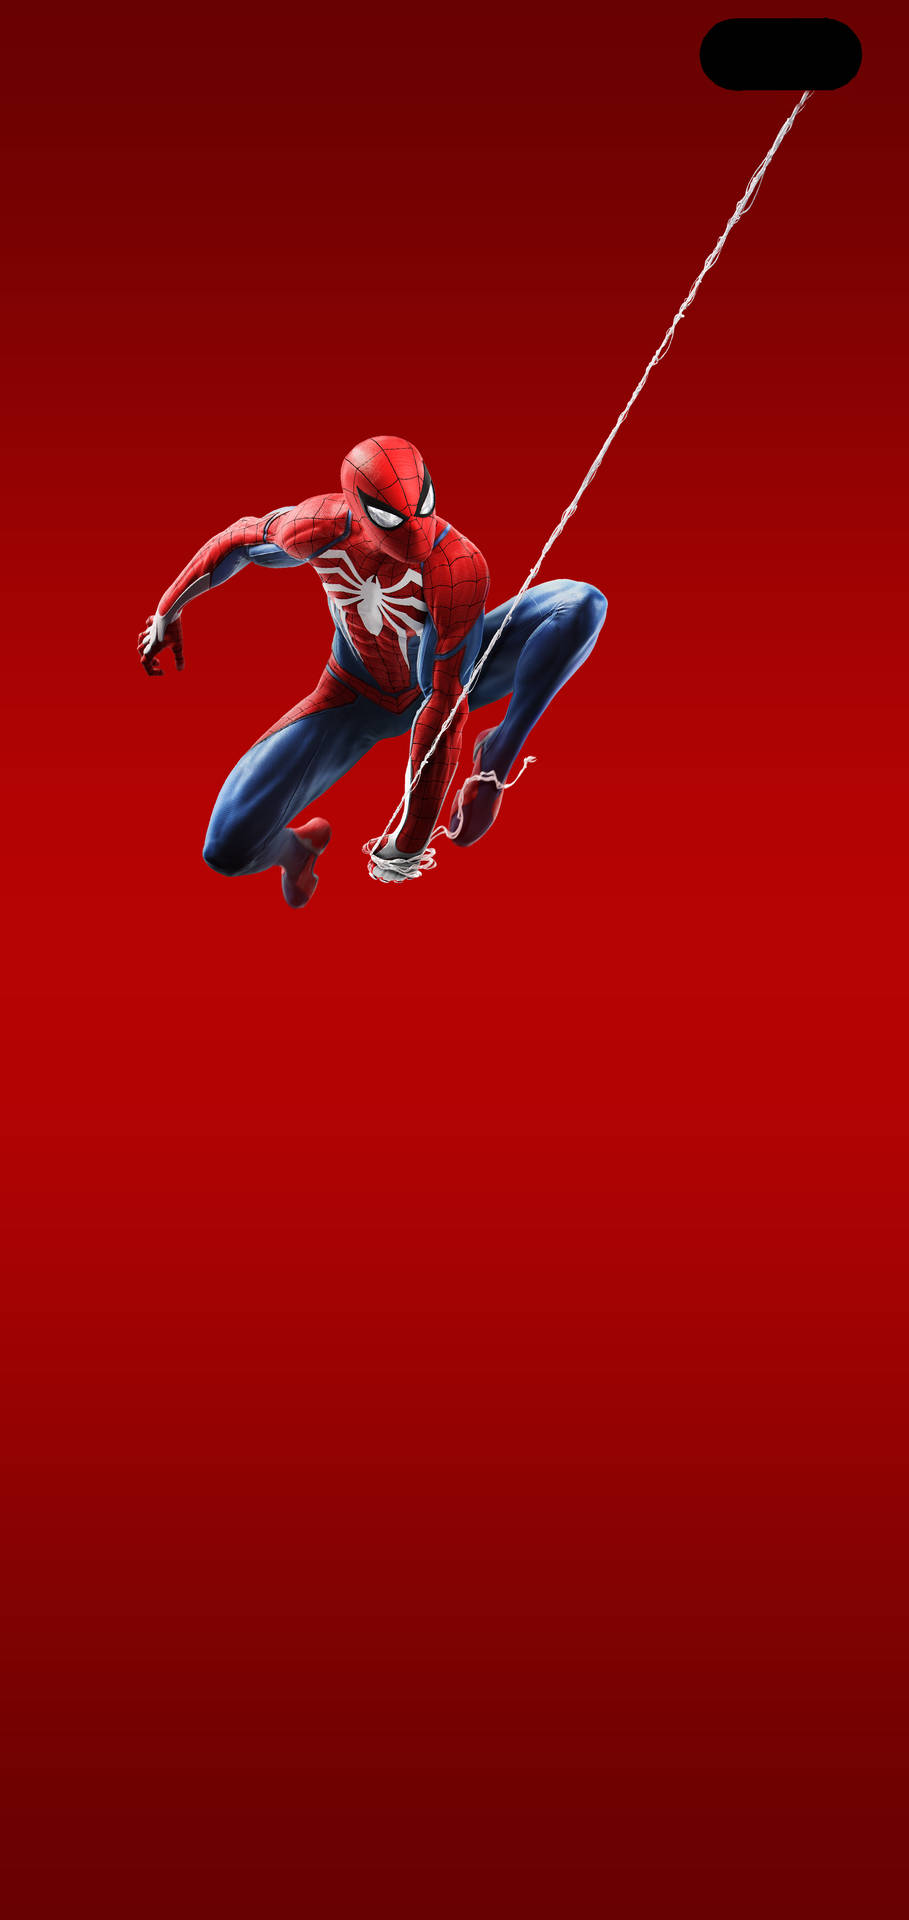 Minimalist Galaxy S10 Plus Spider-man Background